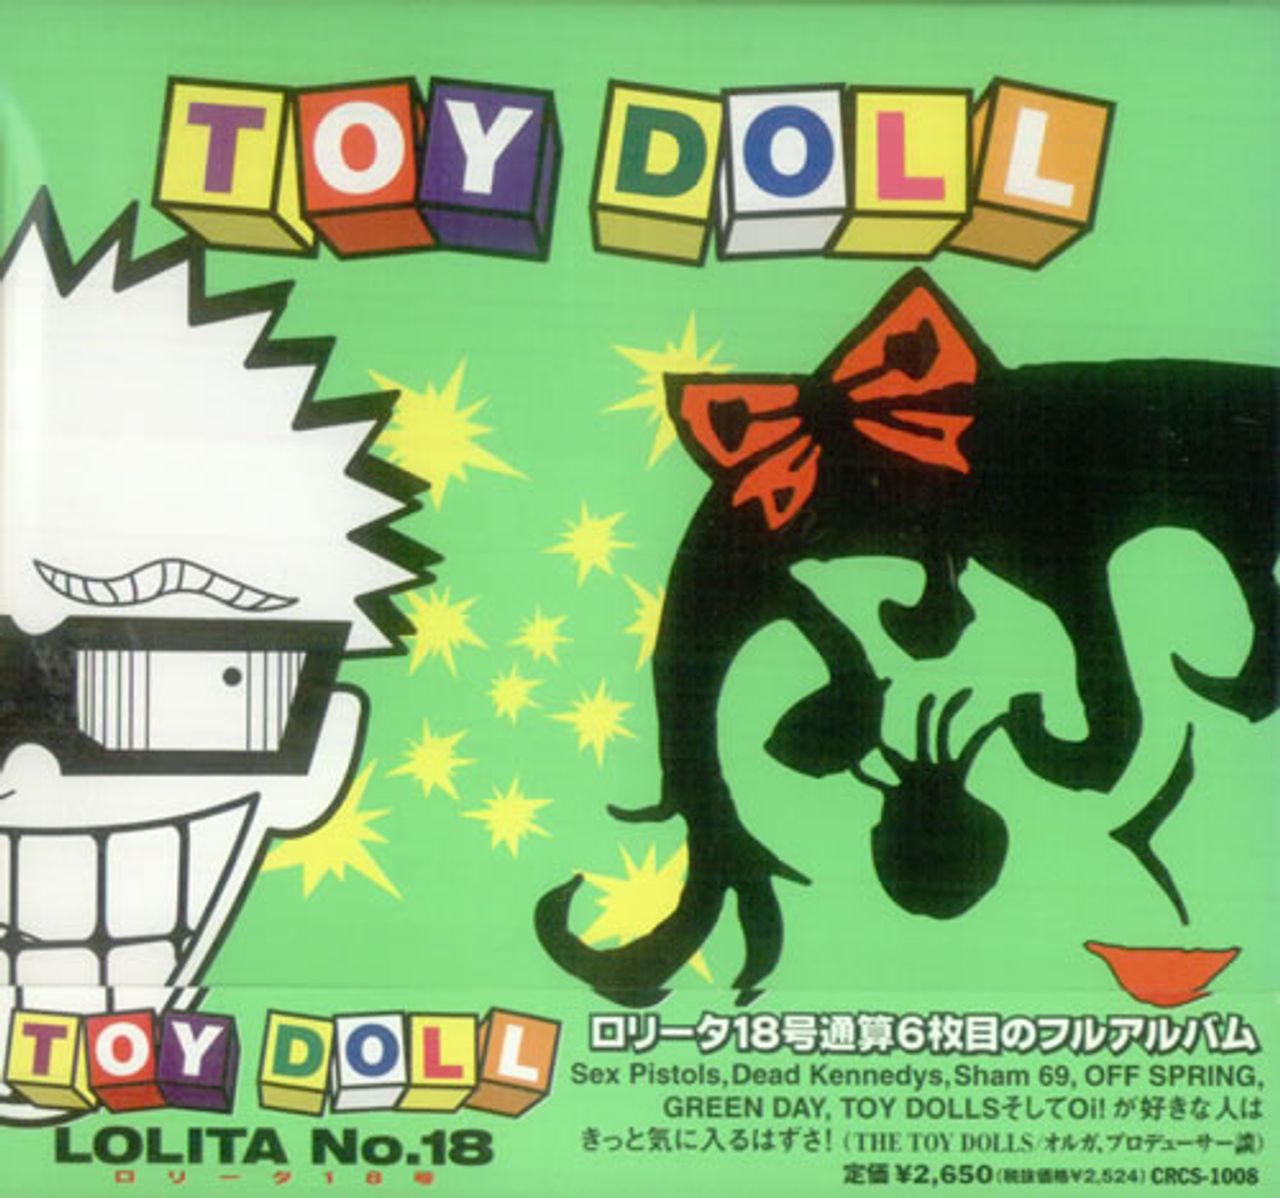 Lolita No.18 Toy Doll Japanese CD album — RareVinyl.com